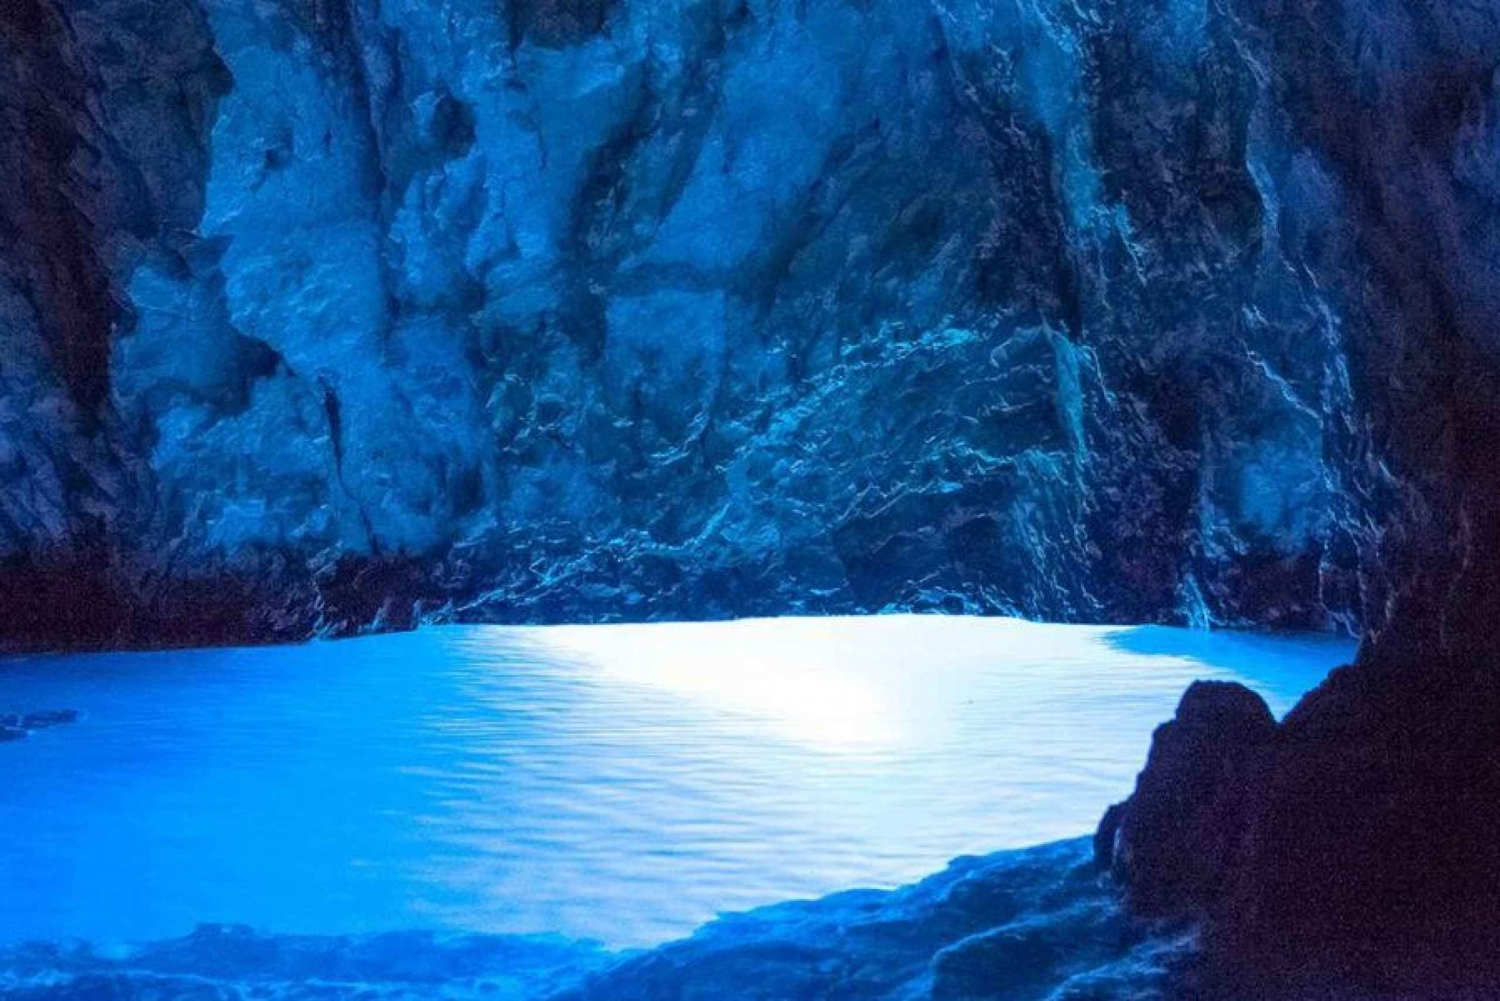 Von Trogir und Split aus: Blaue Höhle & 5 Inseln Ganztagestour